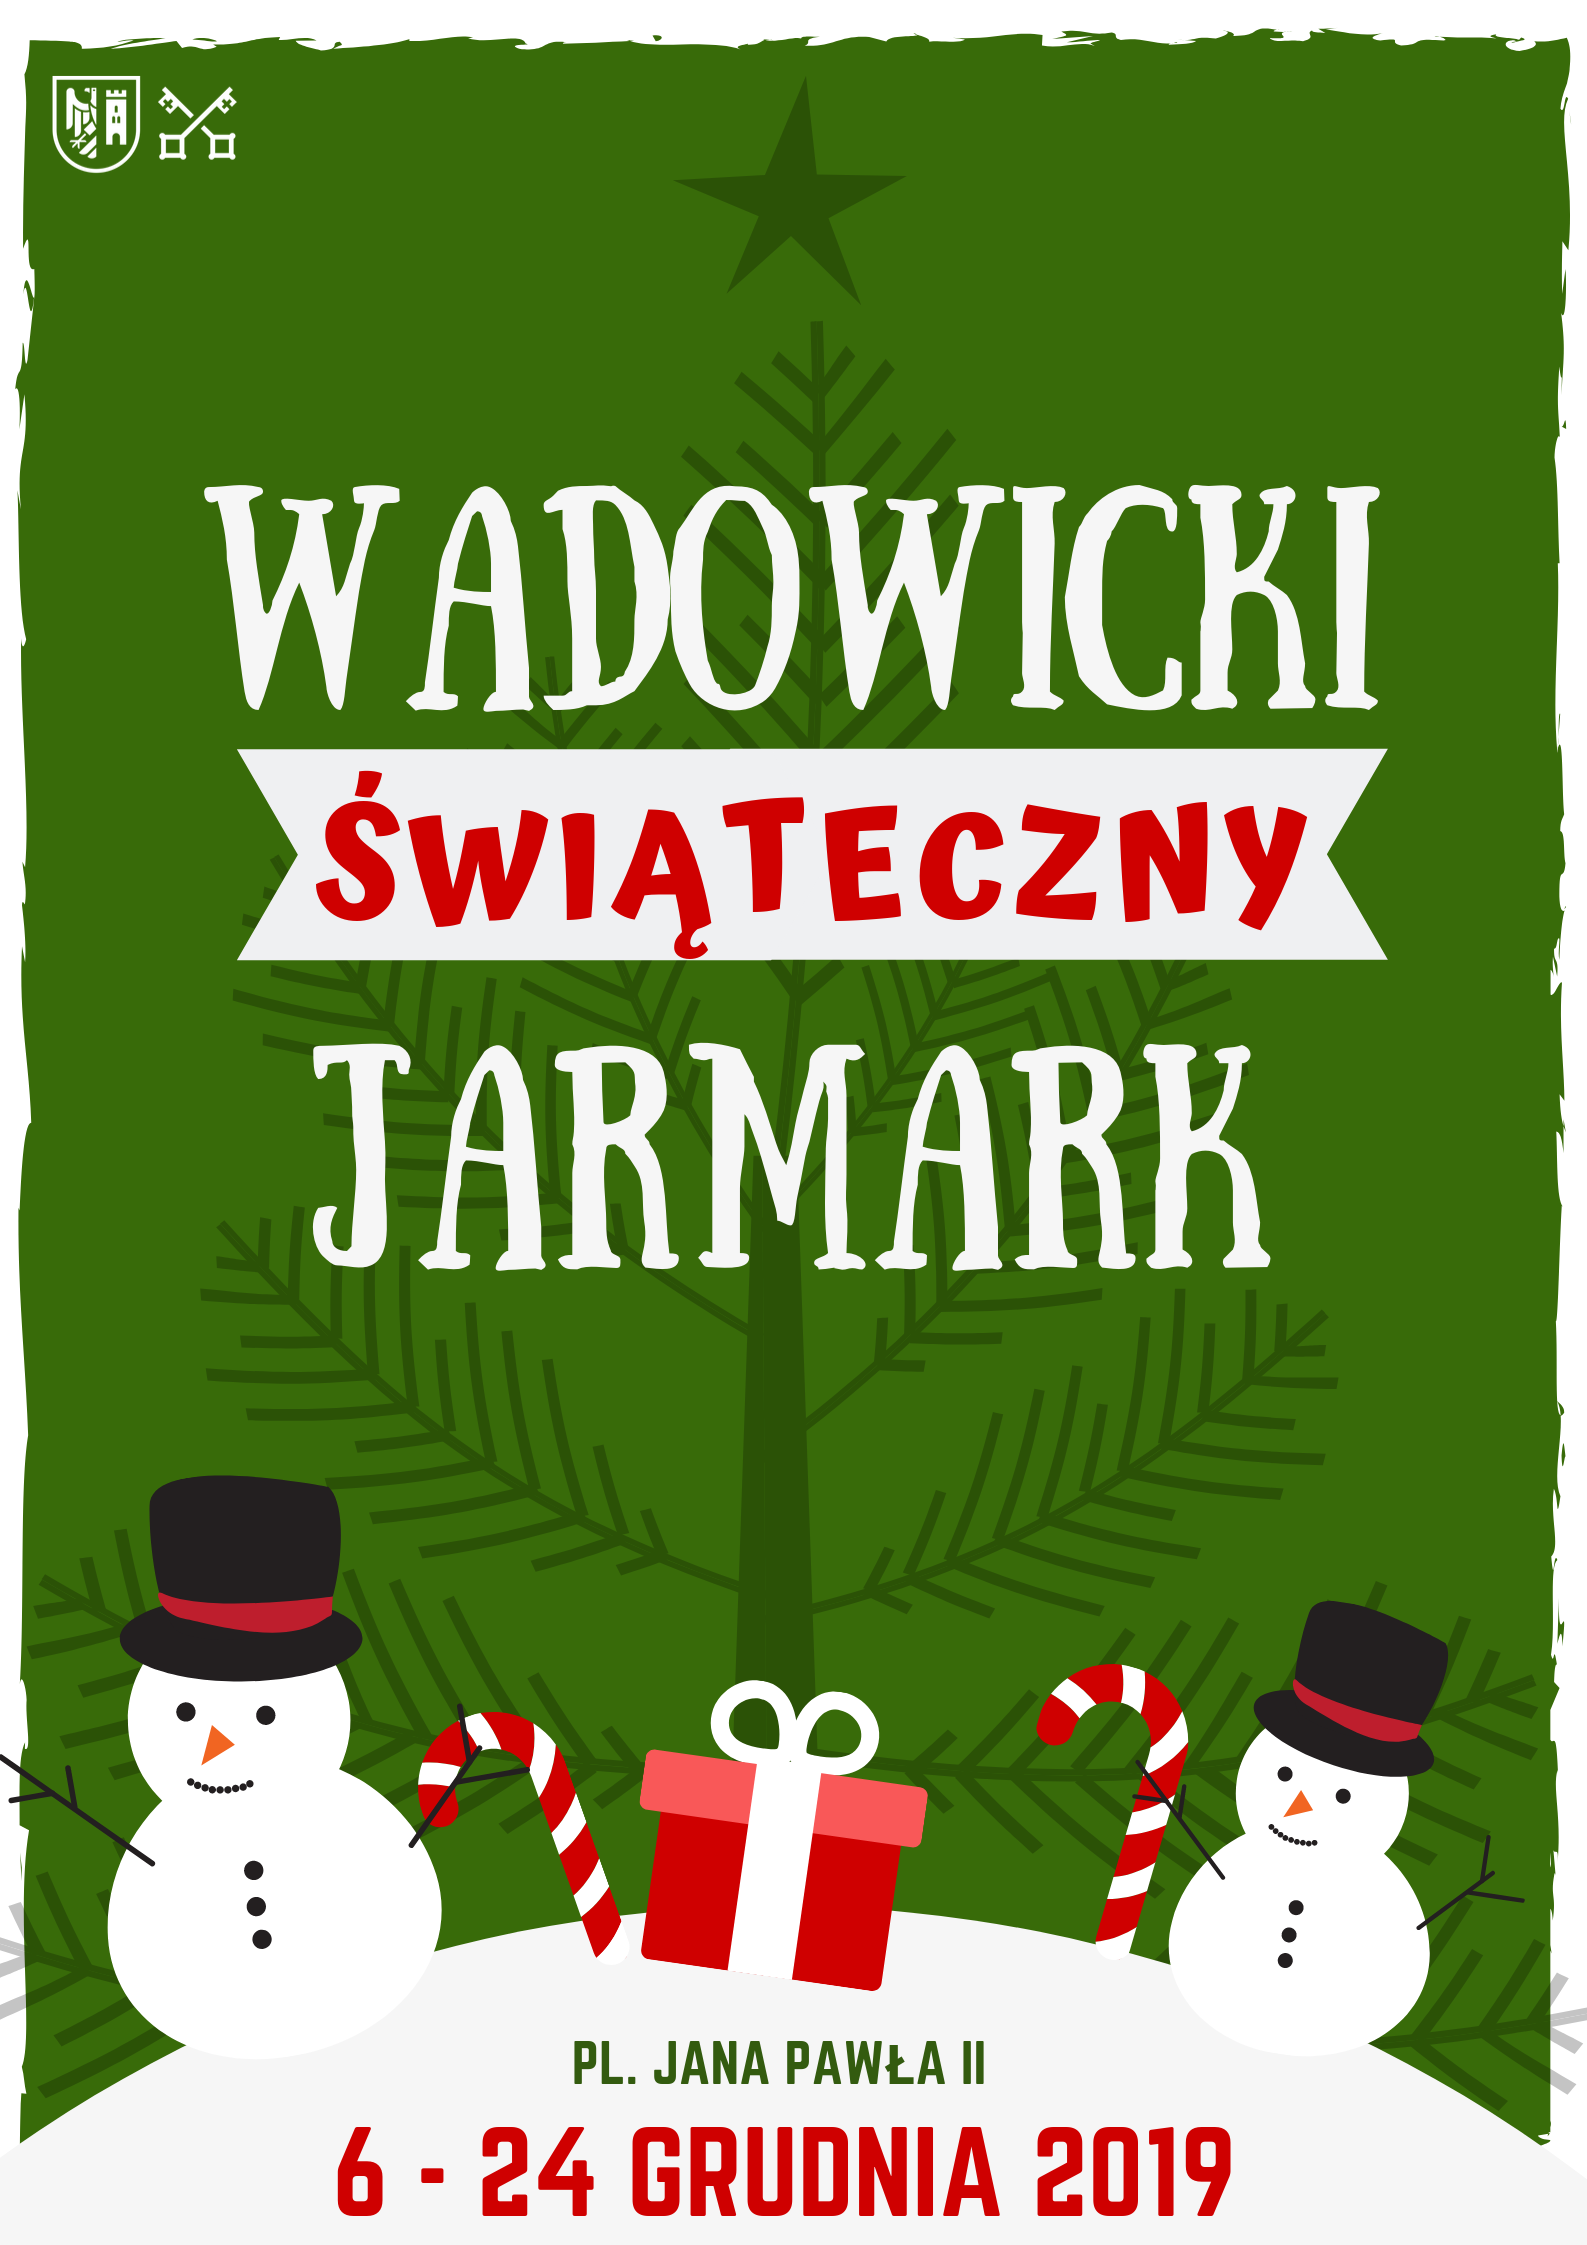 Kopia Kopia Jarmark swiateczny - Zapraszamy wystawców na V Wadowicki Jarmark Świąteczny